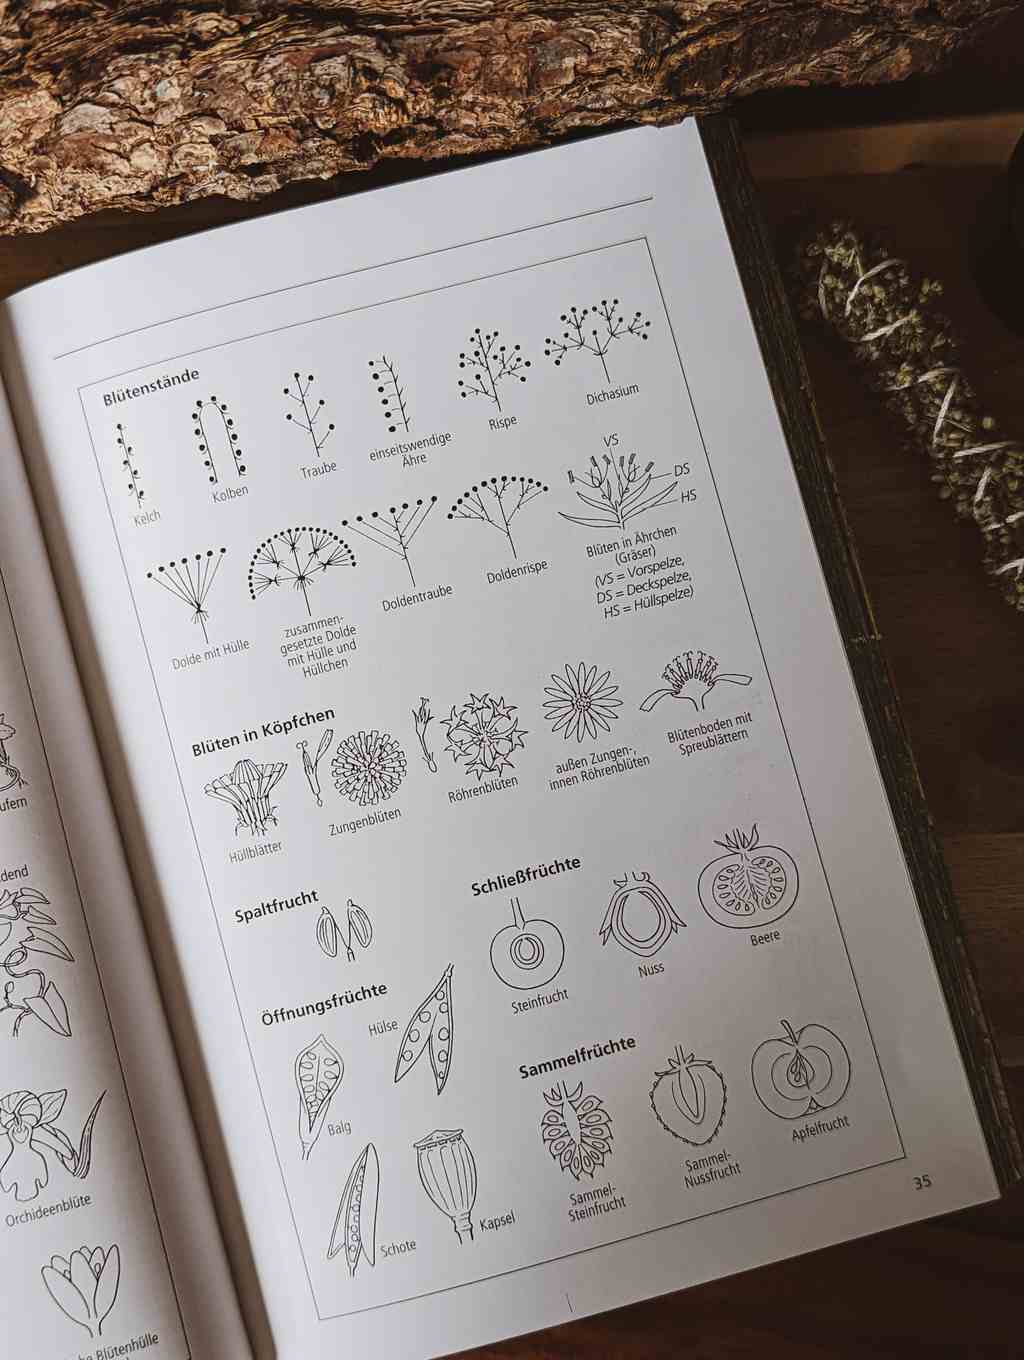 Der aufgeschlagene Heilpflanzenführer. Zu sehen ist eine Seite mit Zeichnungen einiger Bestimmungsmerkmale.